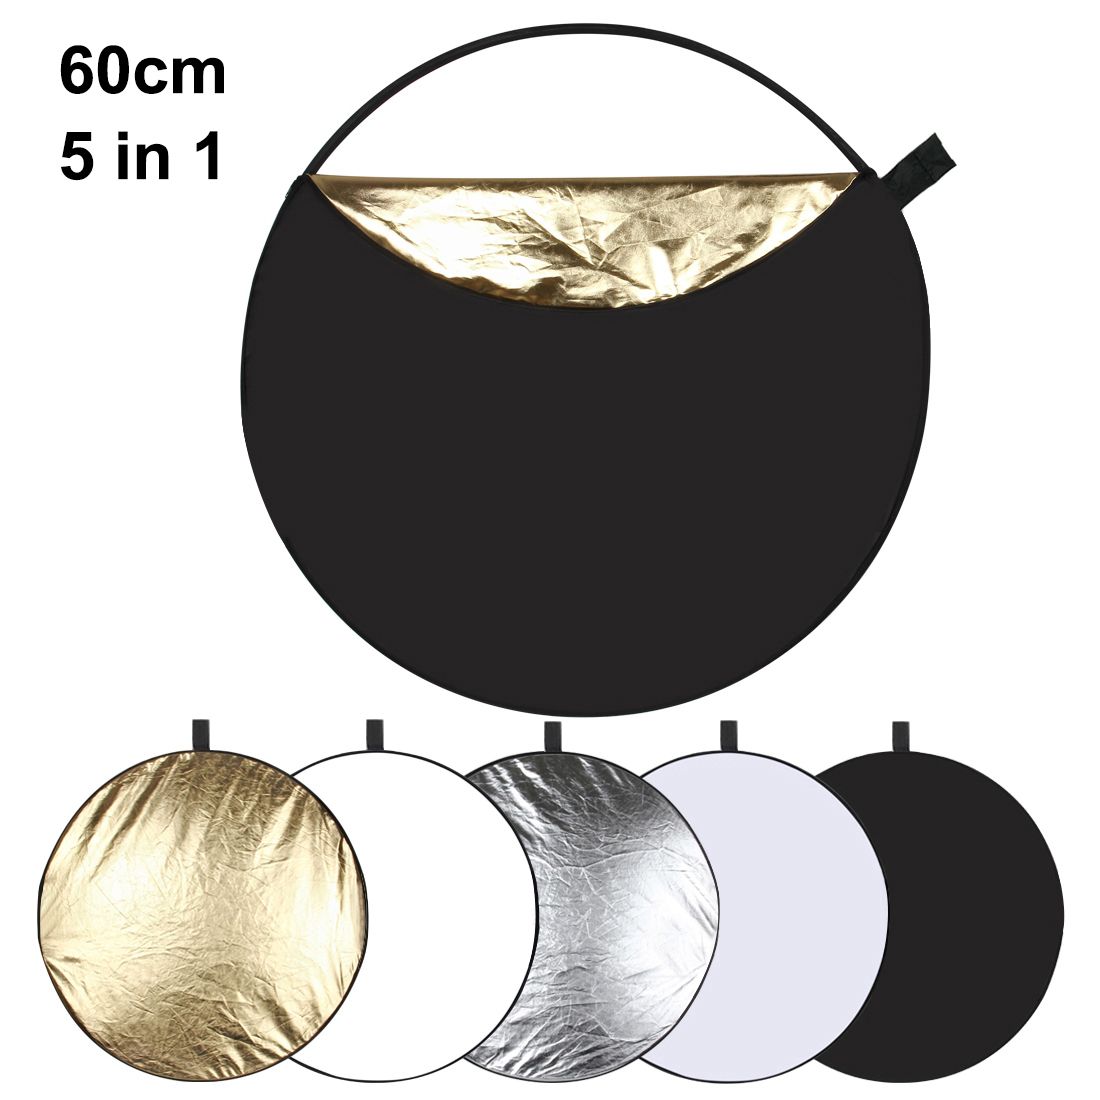 PULUZ-PU5111-60cm-5-in-1-Folding-Photo-Studio-Reflector-Board-Silver-Translucent-Gold-White-Black-1244272